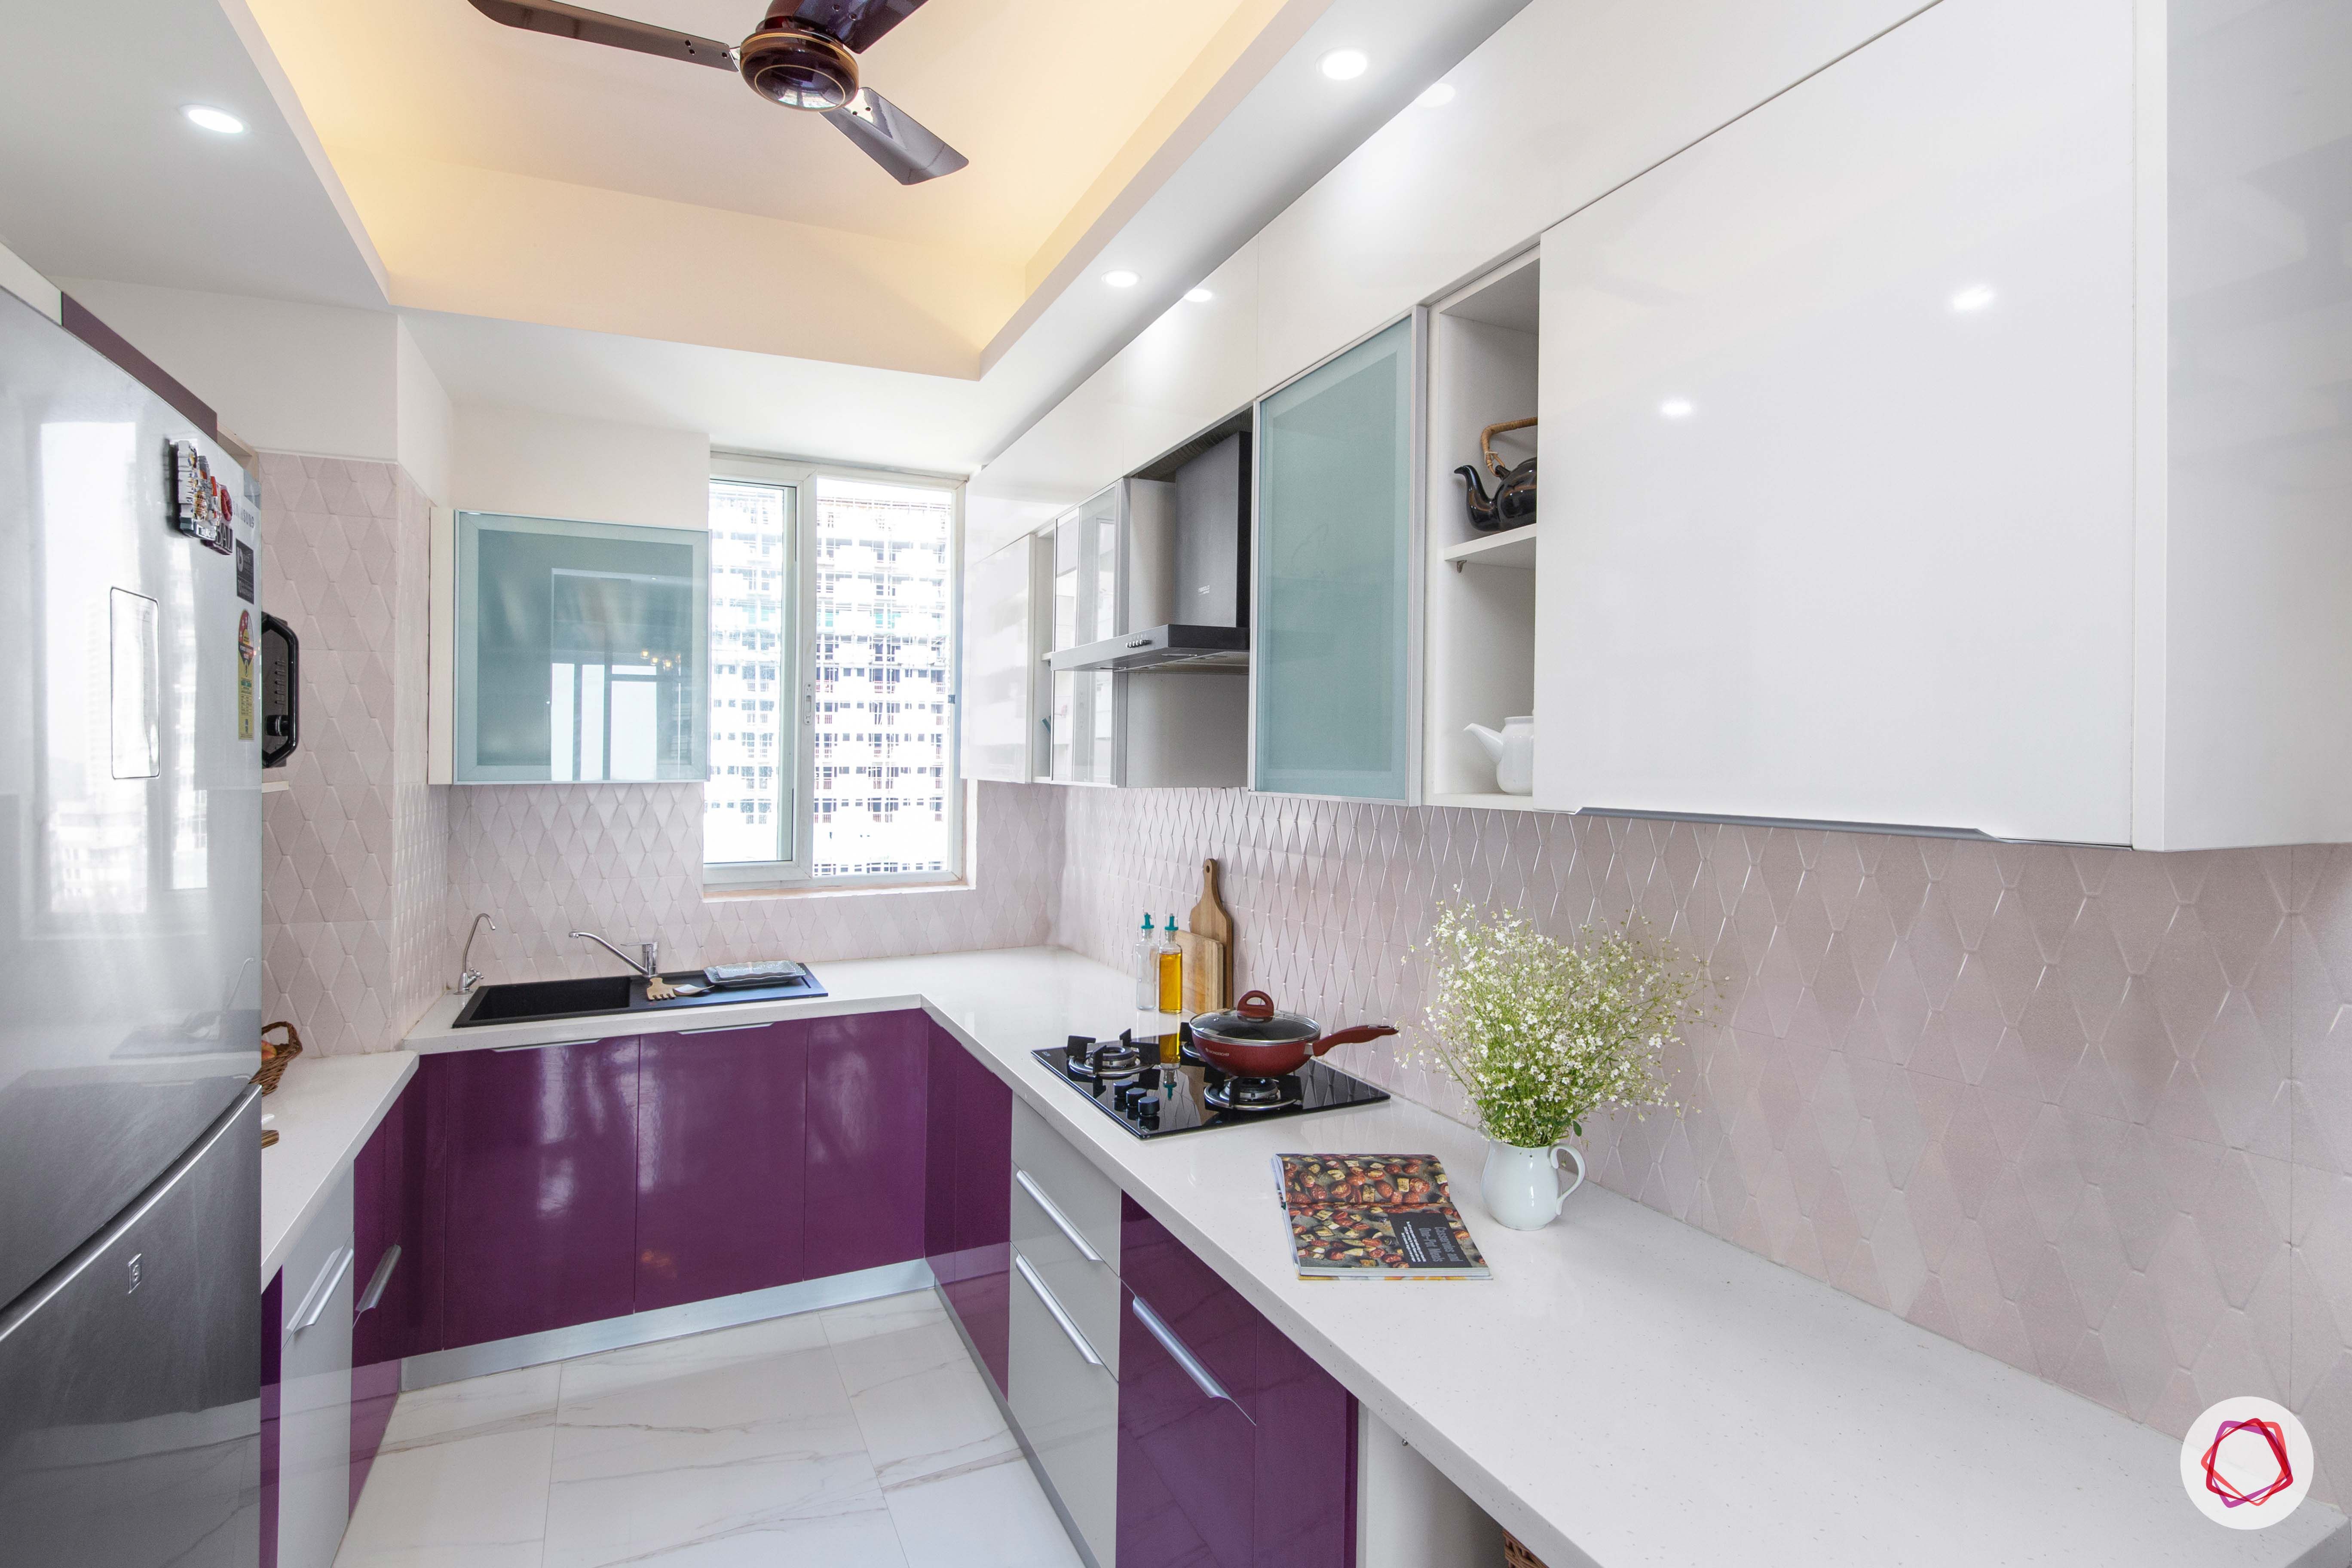 kitchen colors-purple kitchen designs-white kitchen cabinet designs